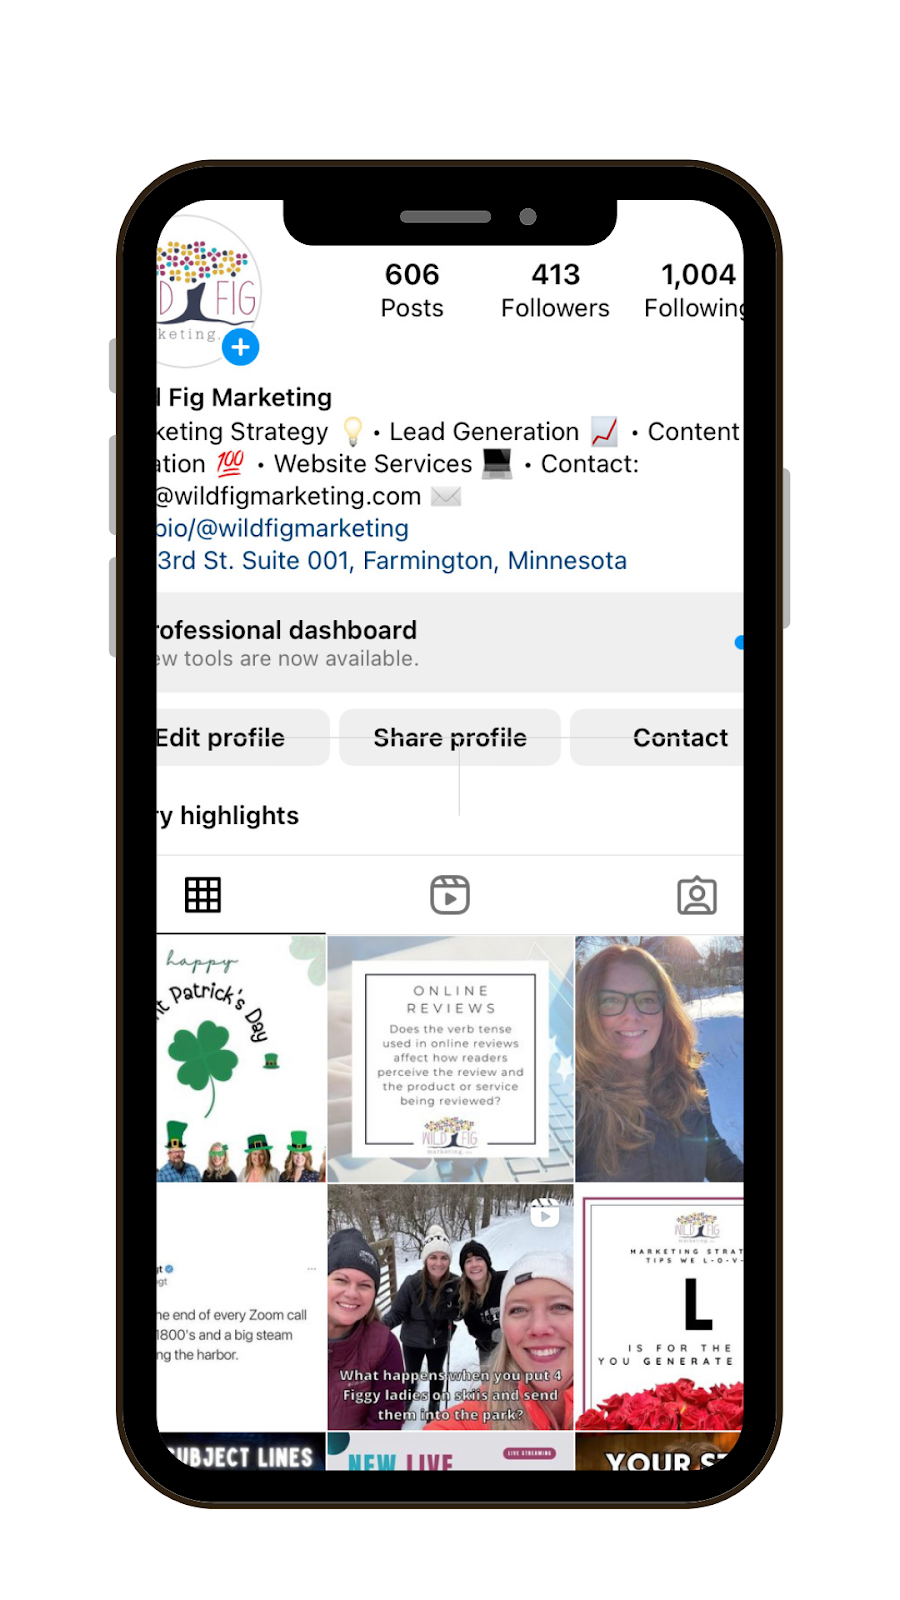 Instagram social media platform